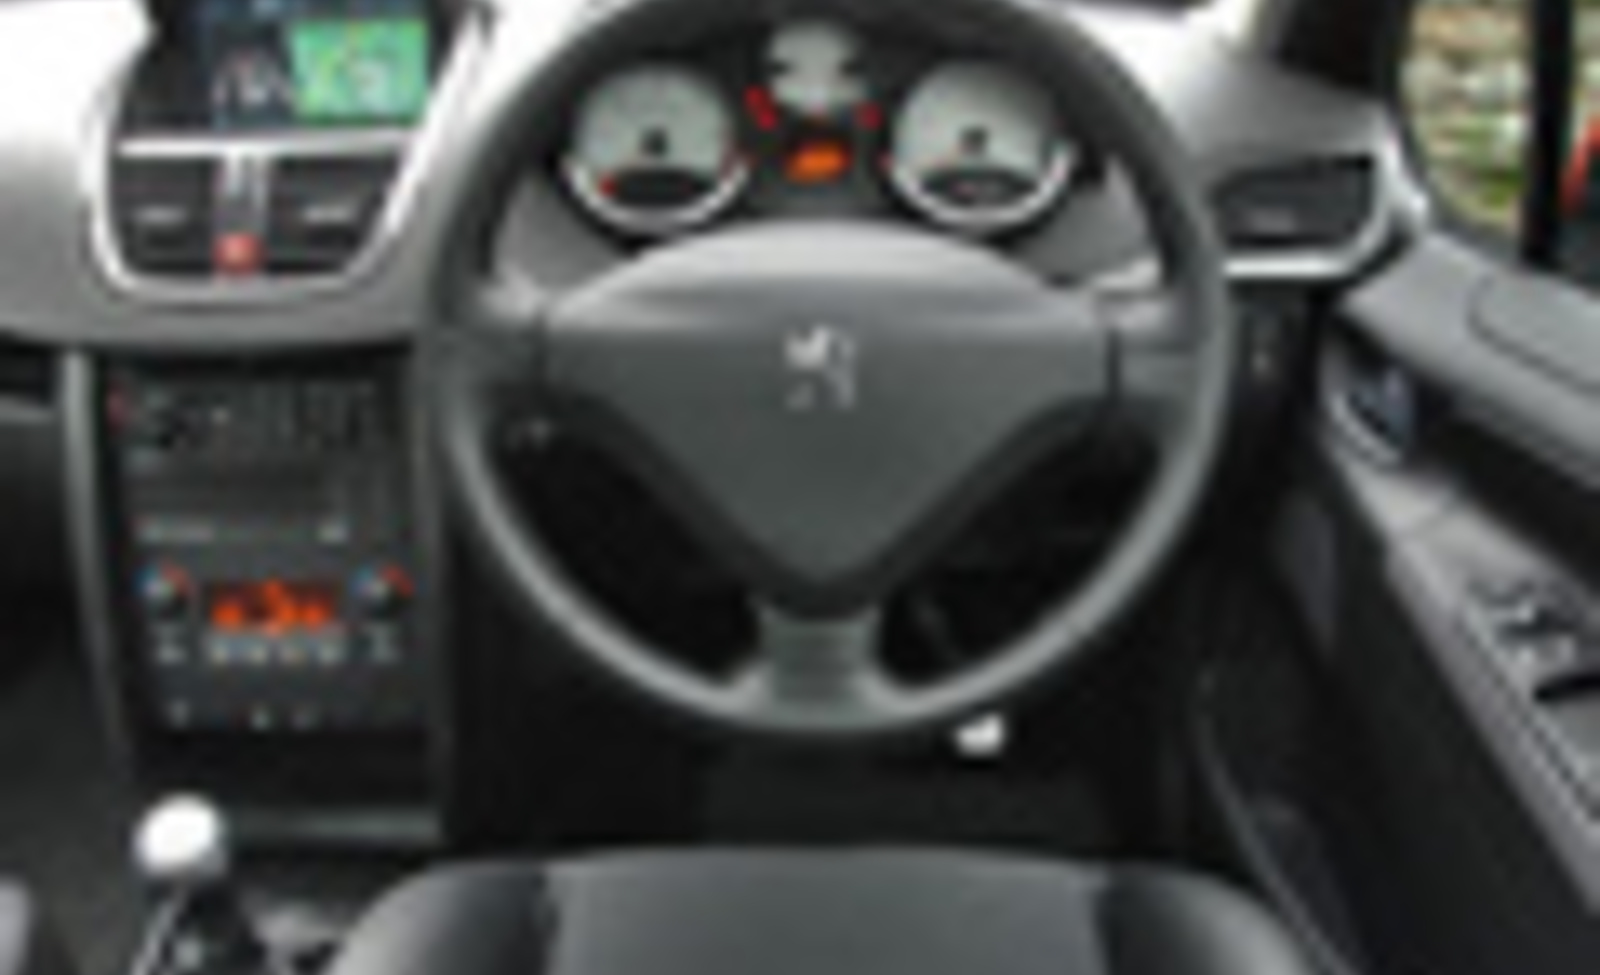 2008 Peugeot 207 CC 1.6 (120HP) - POV Drive 